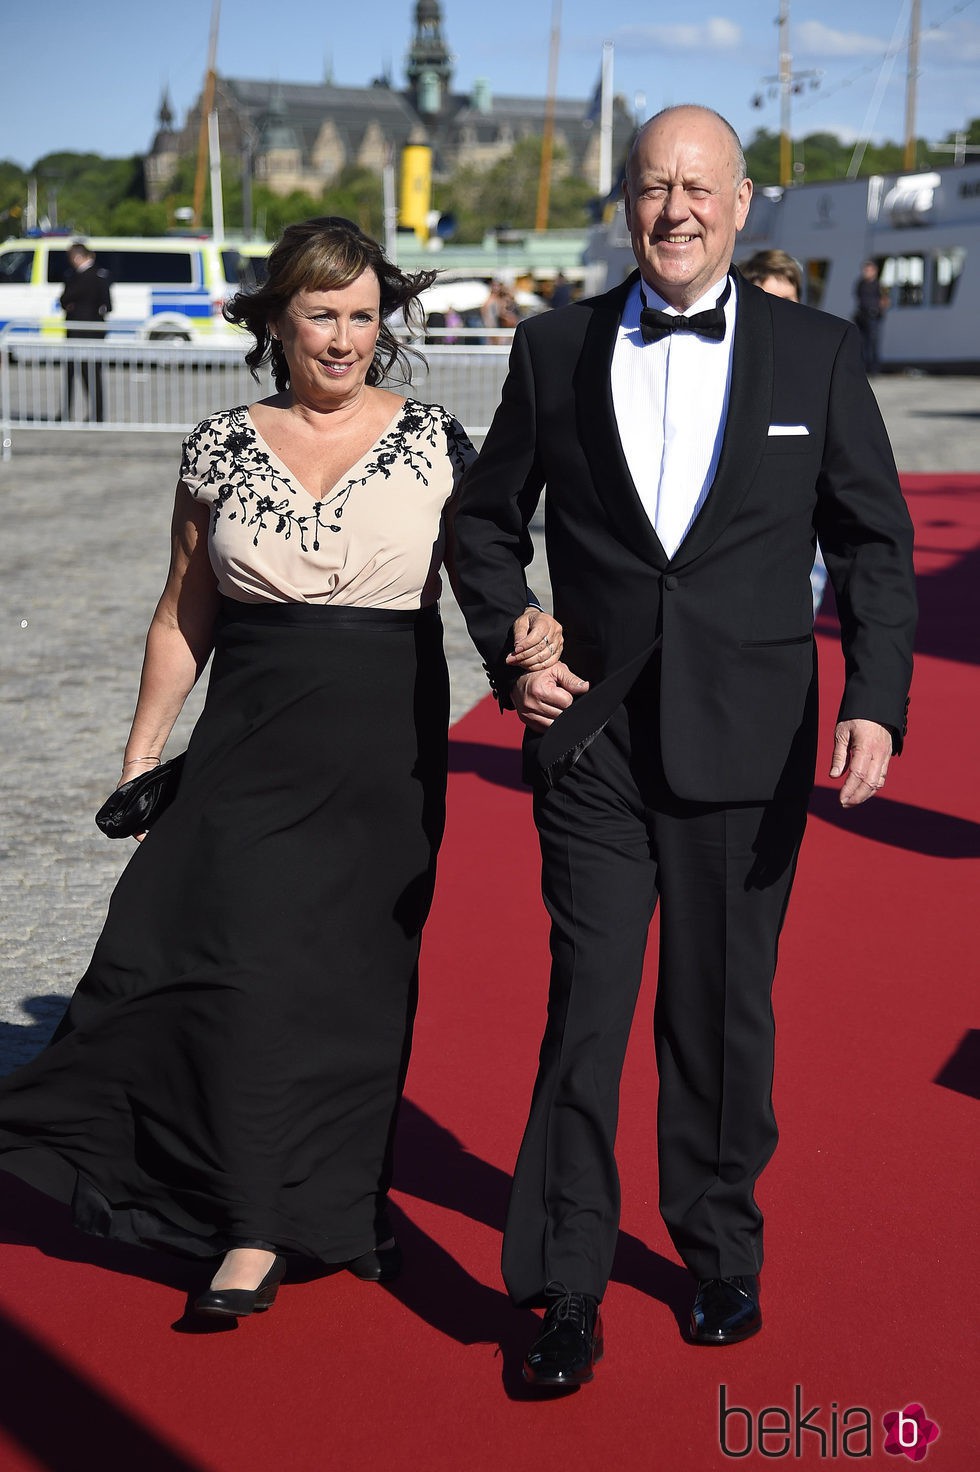 Erik y Marie Hellqvist en la cena de gala previa a la boda de Carlos Felipe de Suecia y Sofia Hellqvist